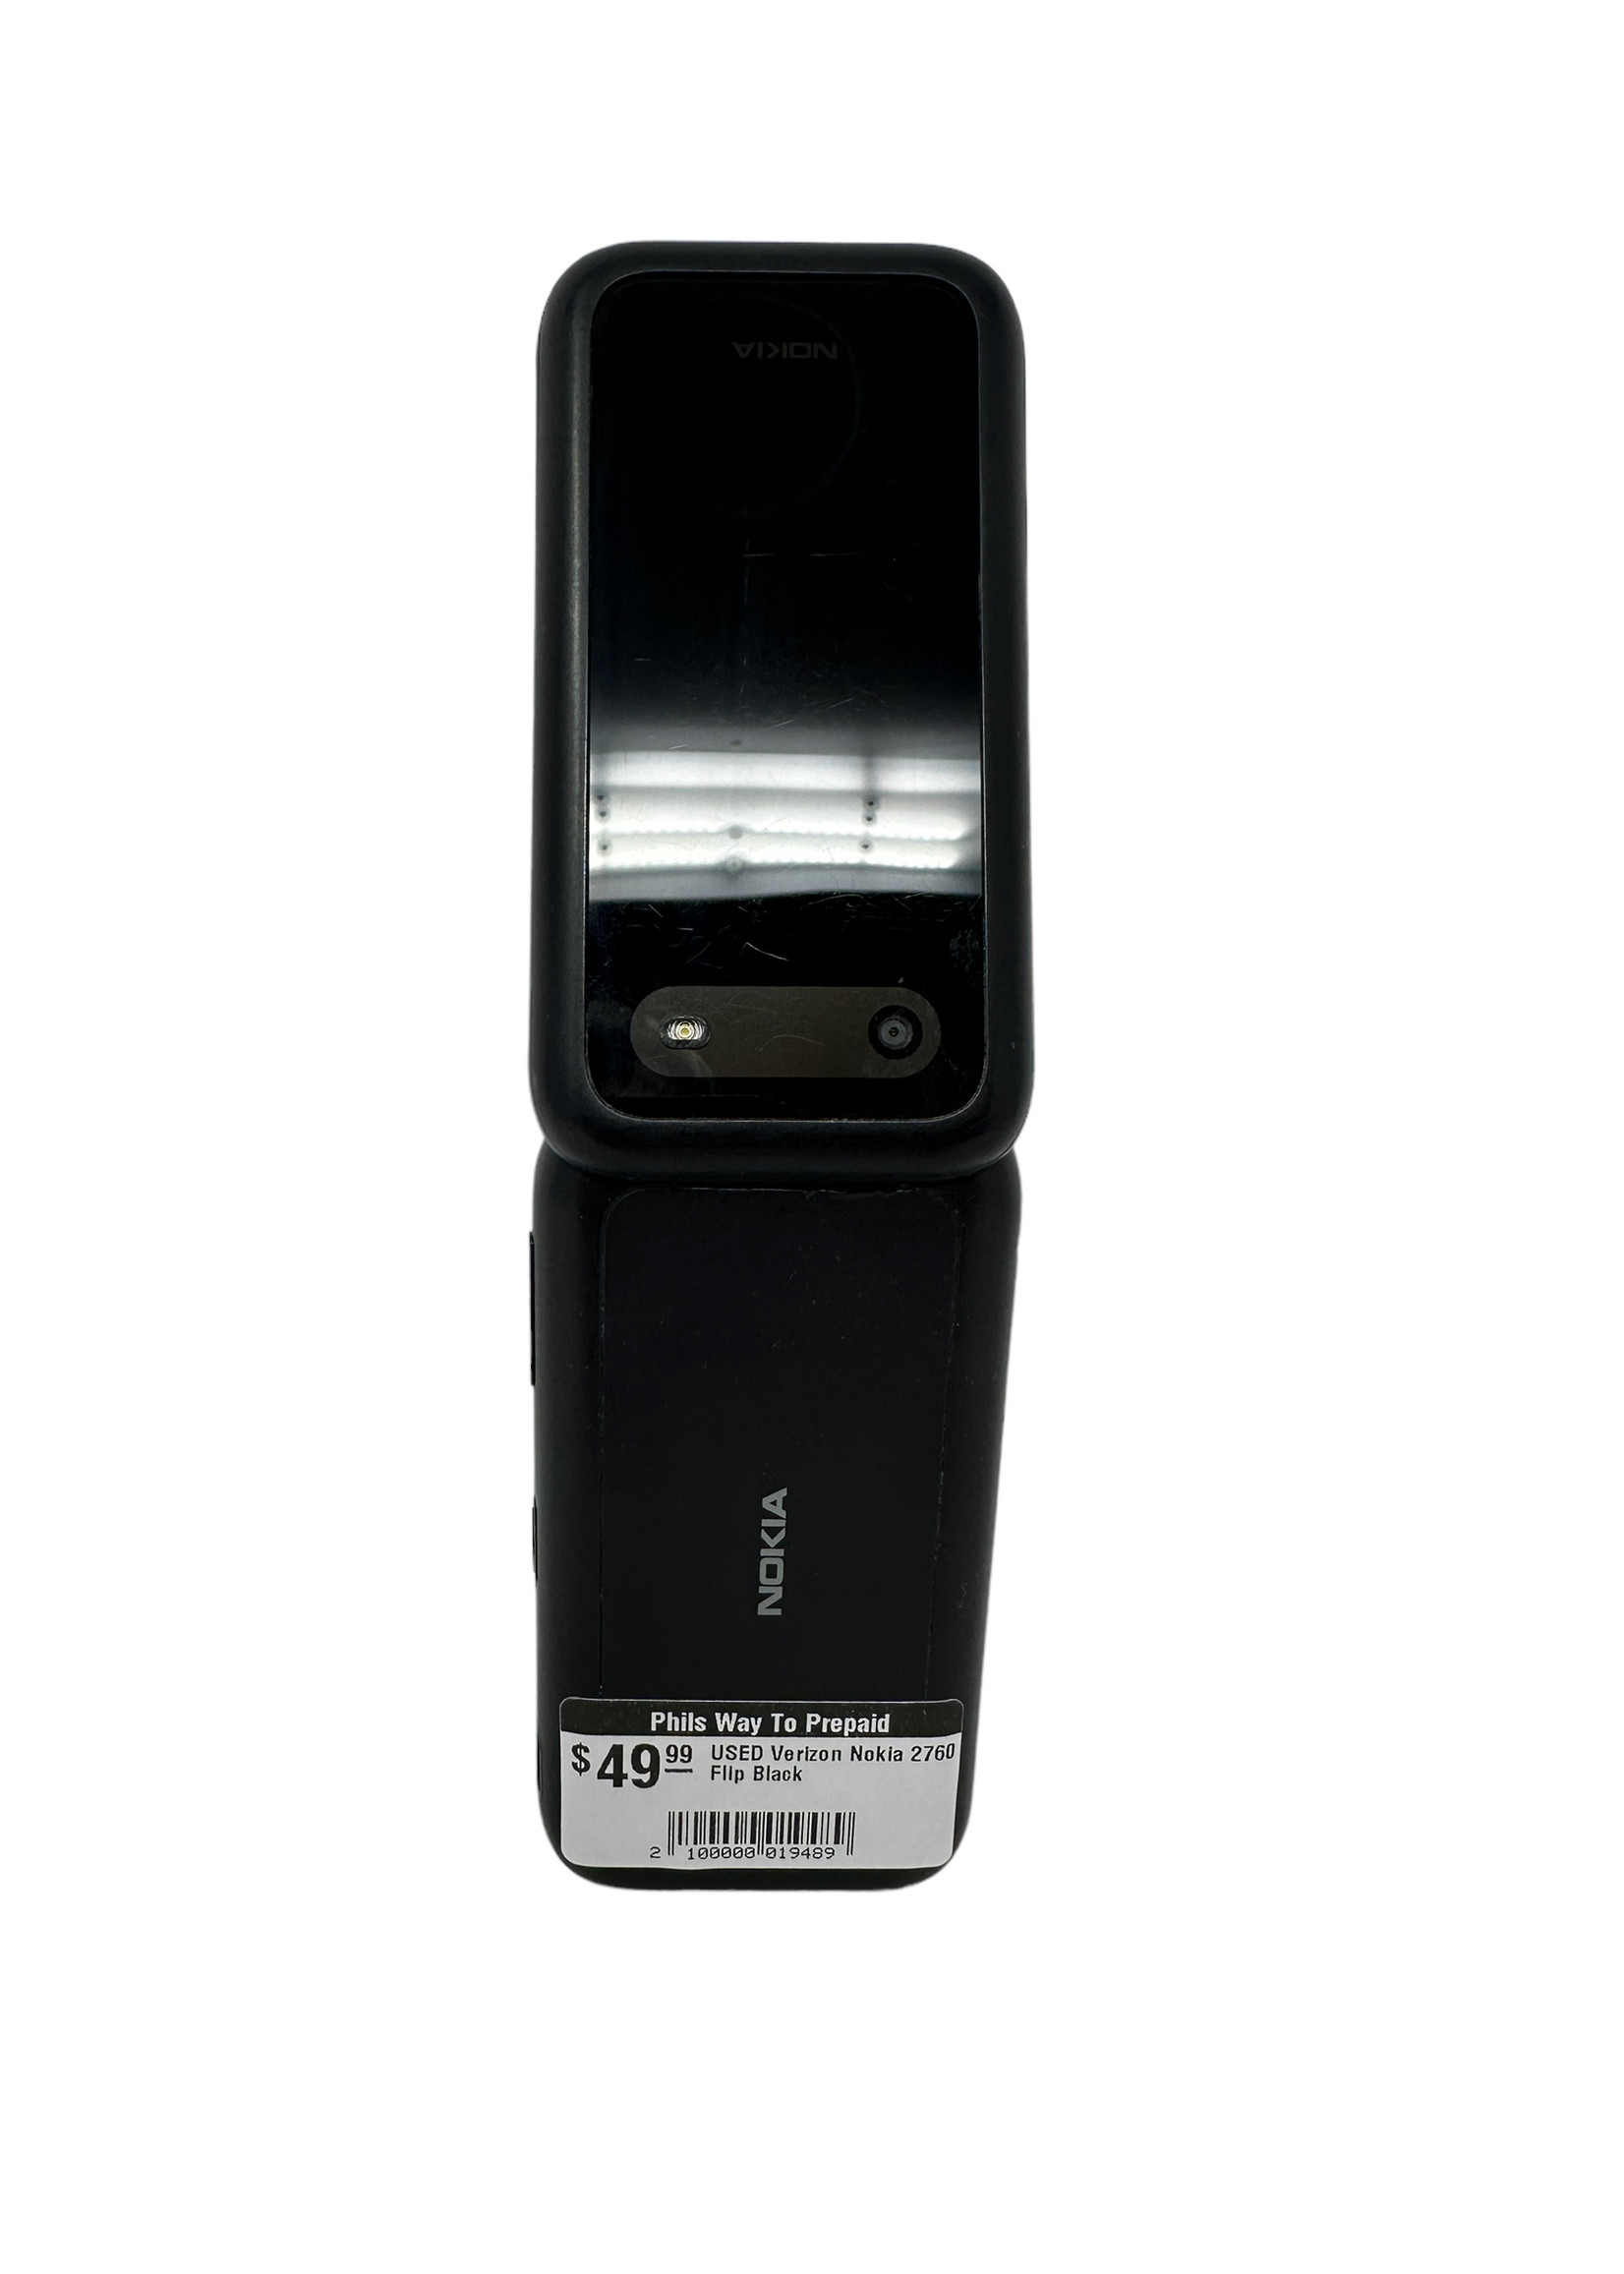 Nokia USED Verizon Nokia 2760 Flip Black